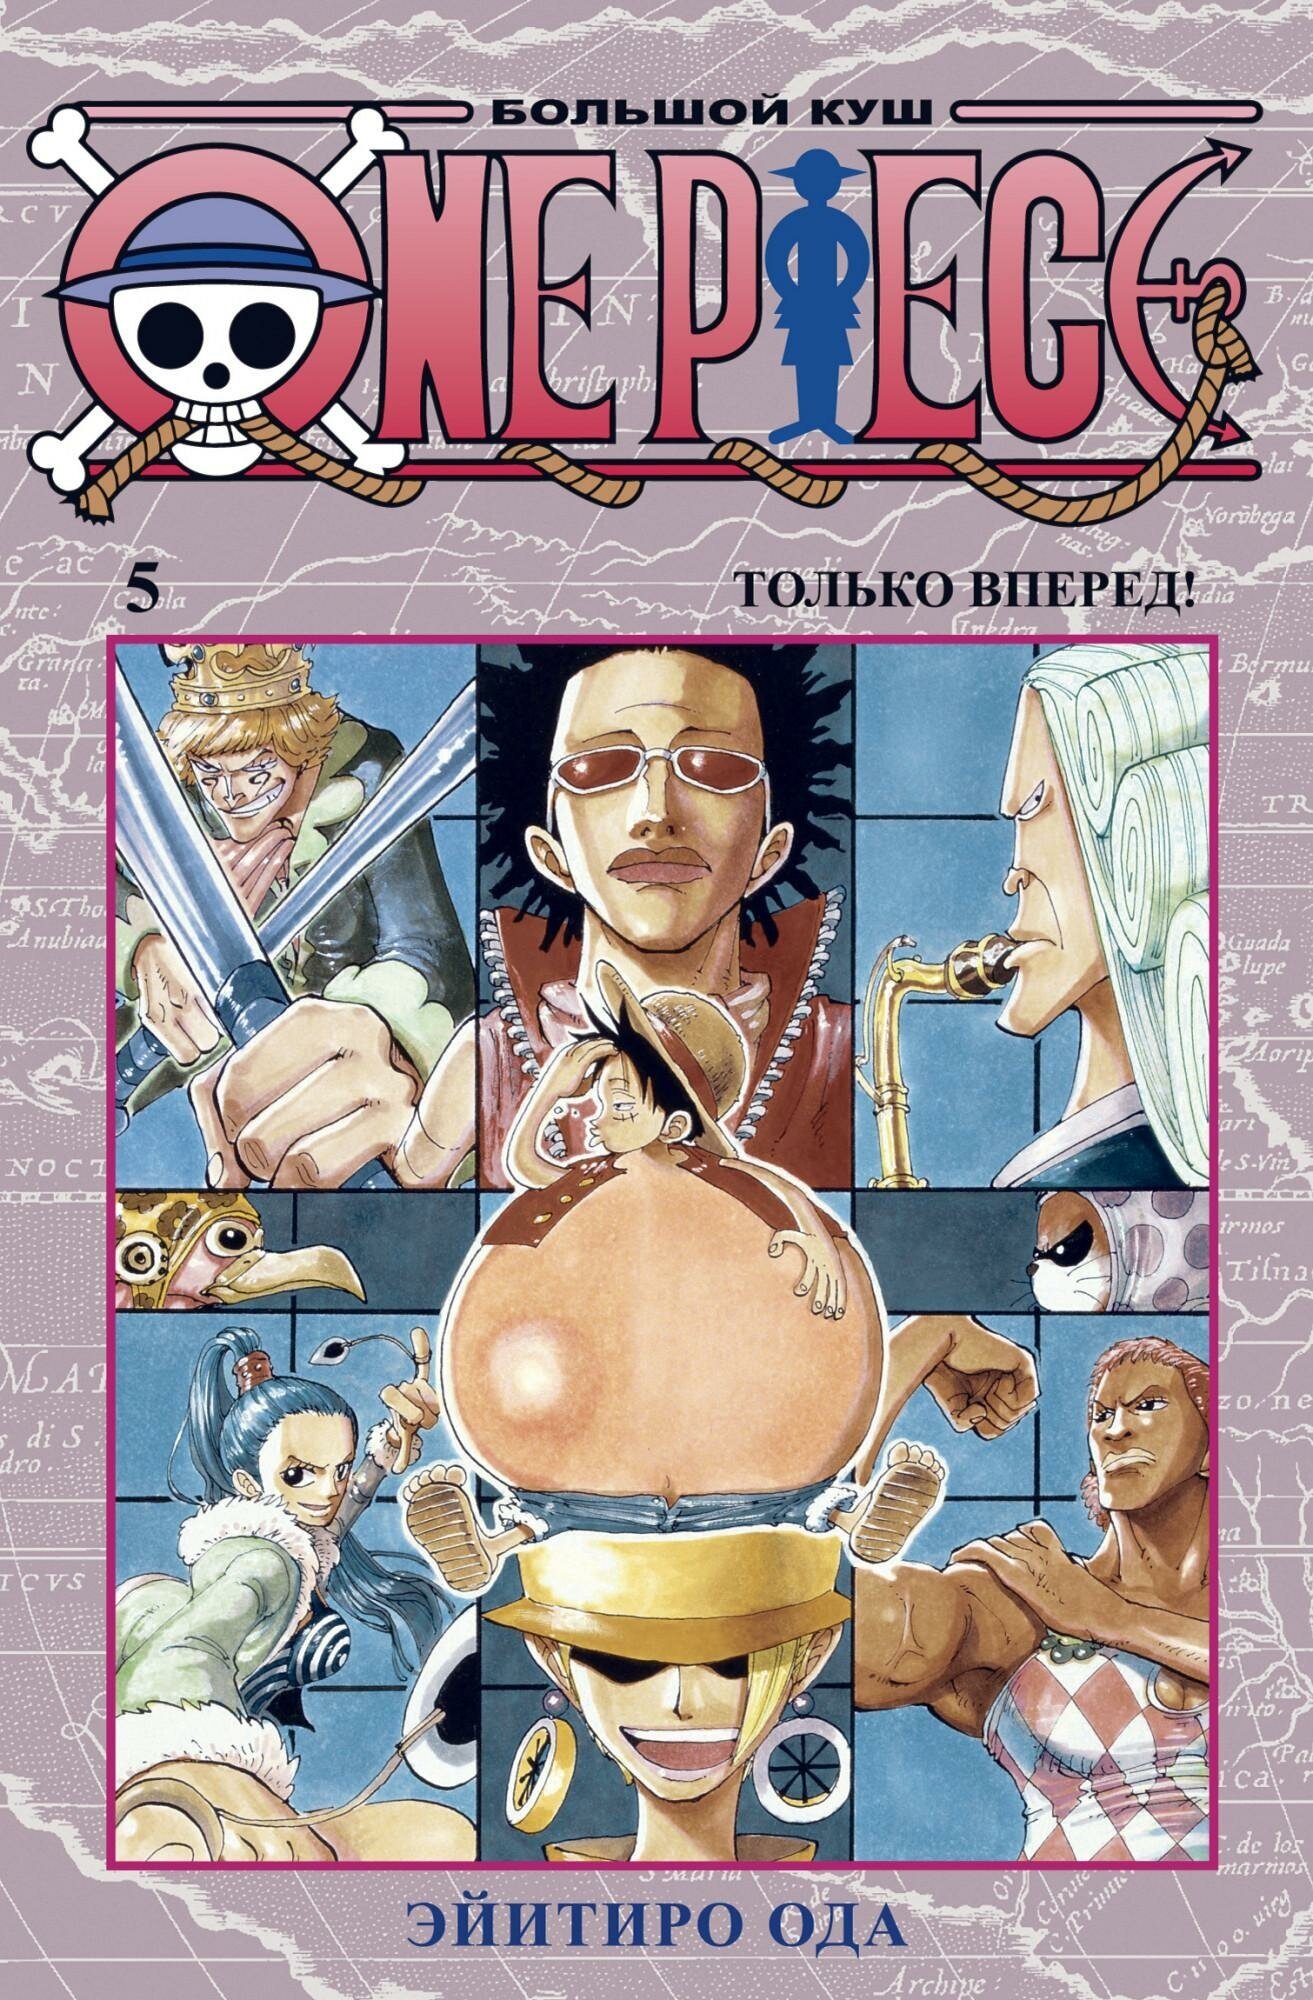 Ода Э. One Piece. Большой куш. Книга 5. Только вперед. Графические романы. Манга